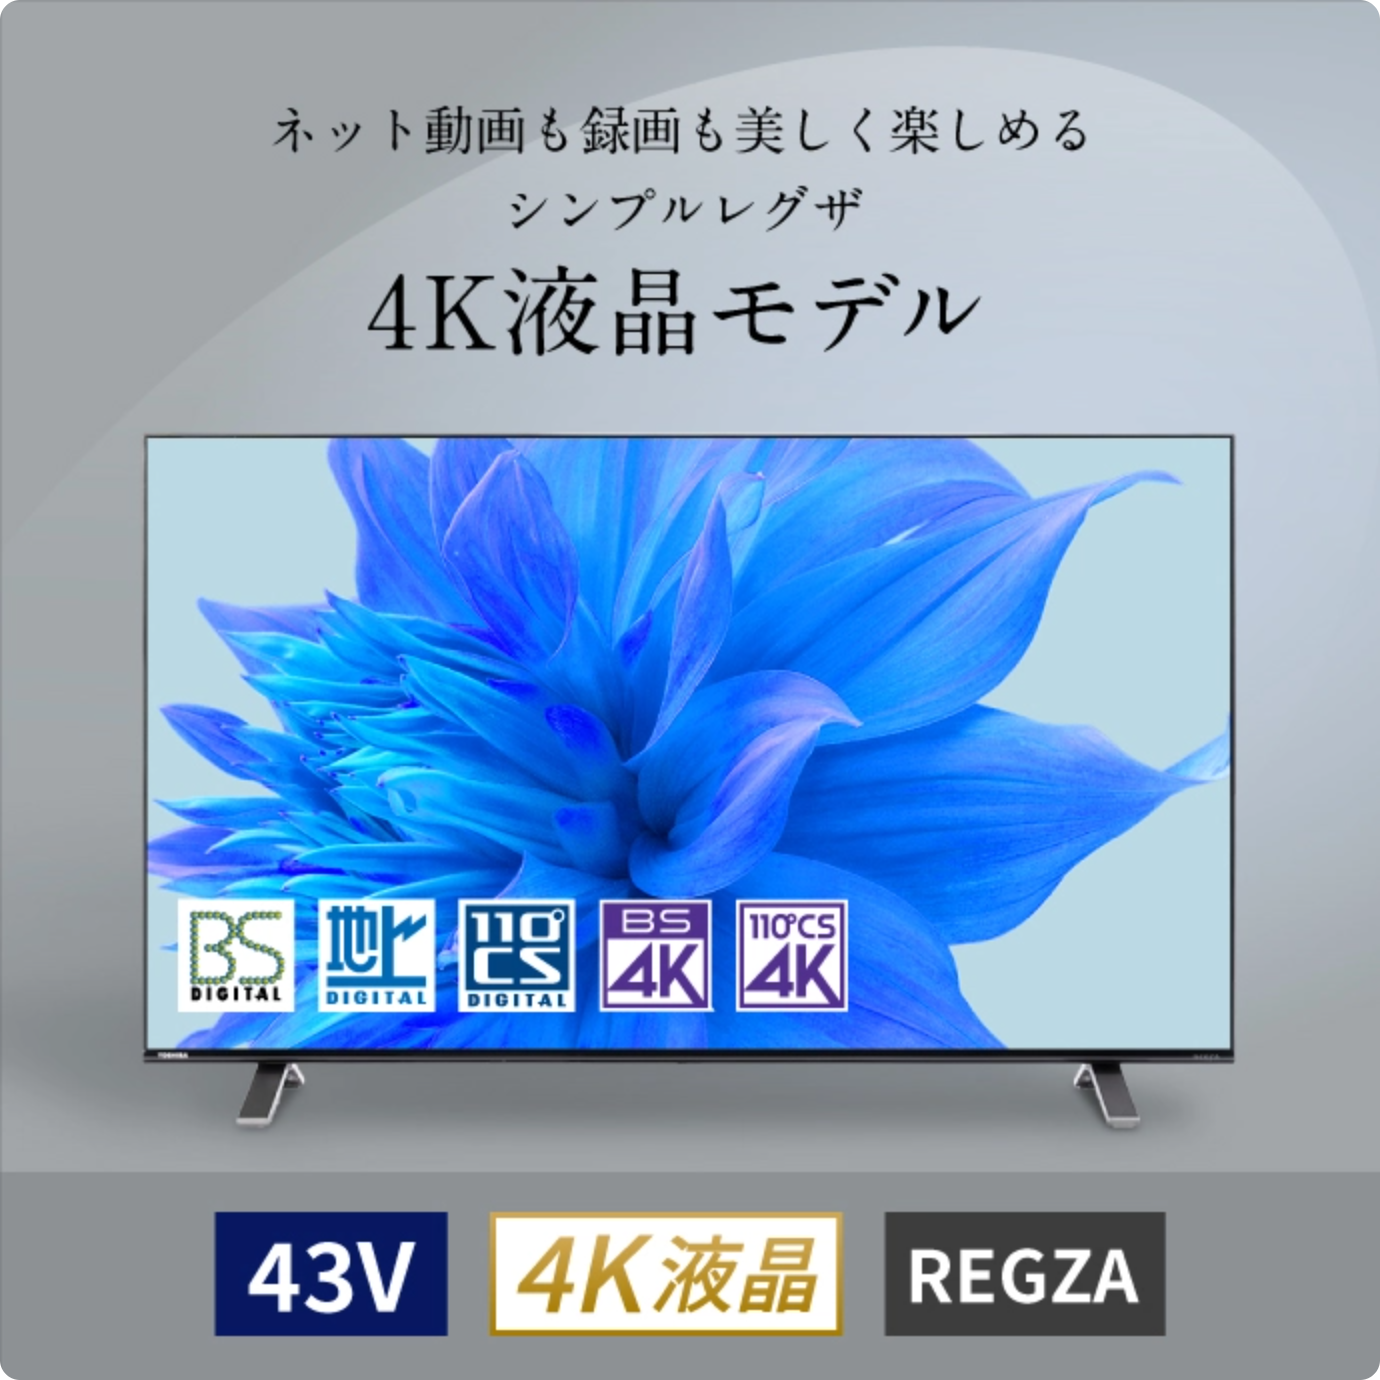 どうぞよろしくお願いいたします【REGZA】4K液晶レグザ43V型 4Kデジタル液晶テレビ 43C350X